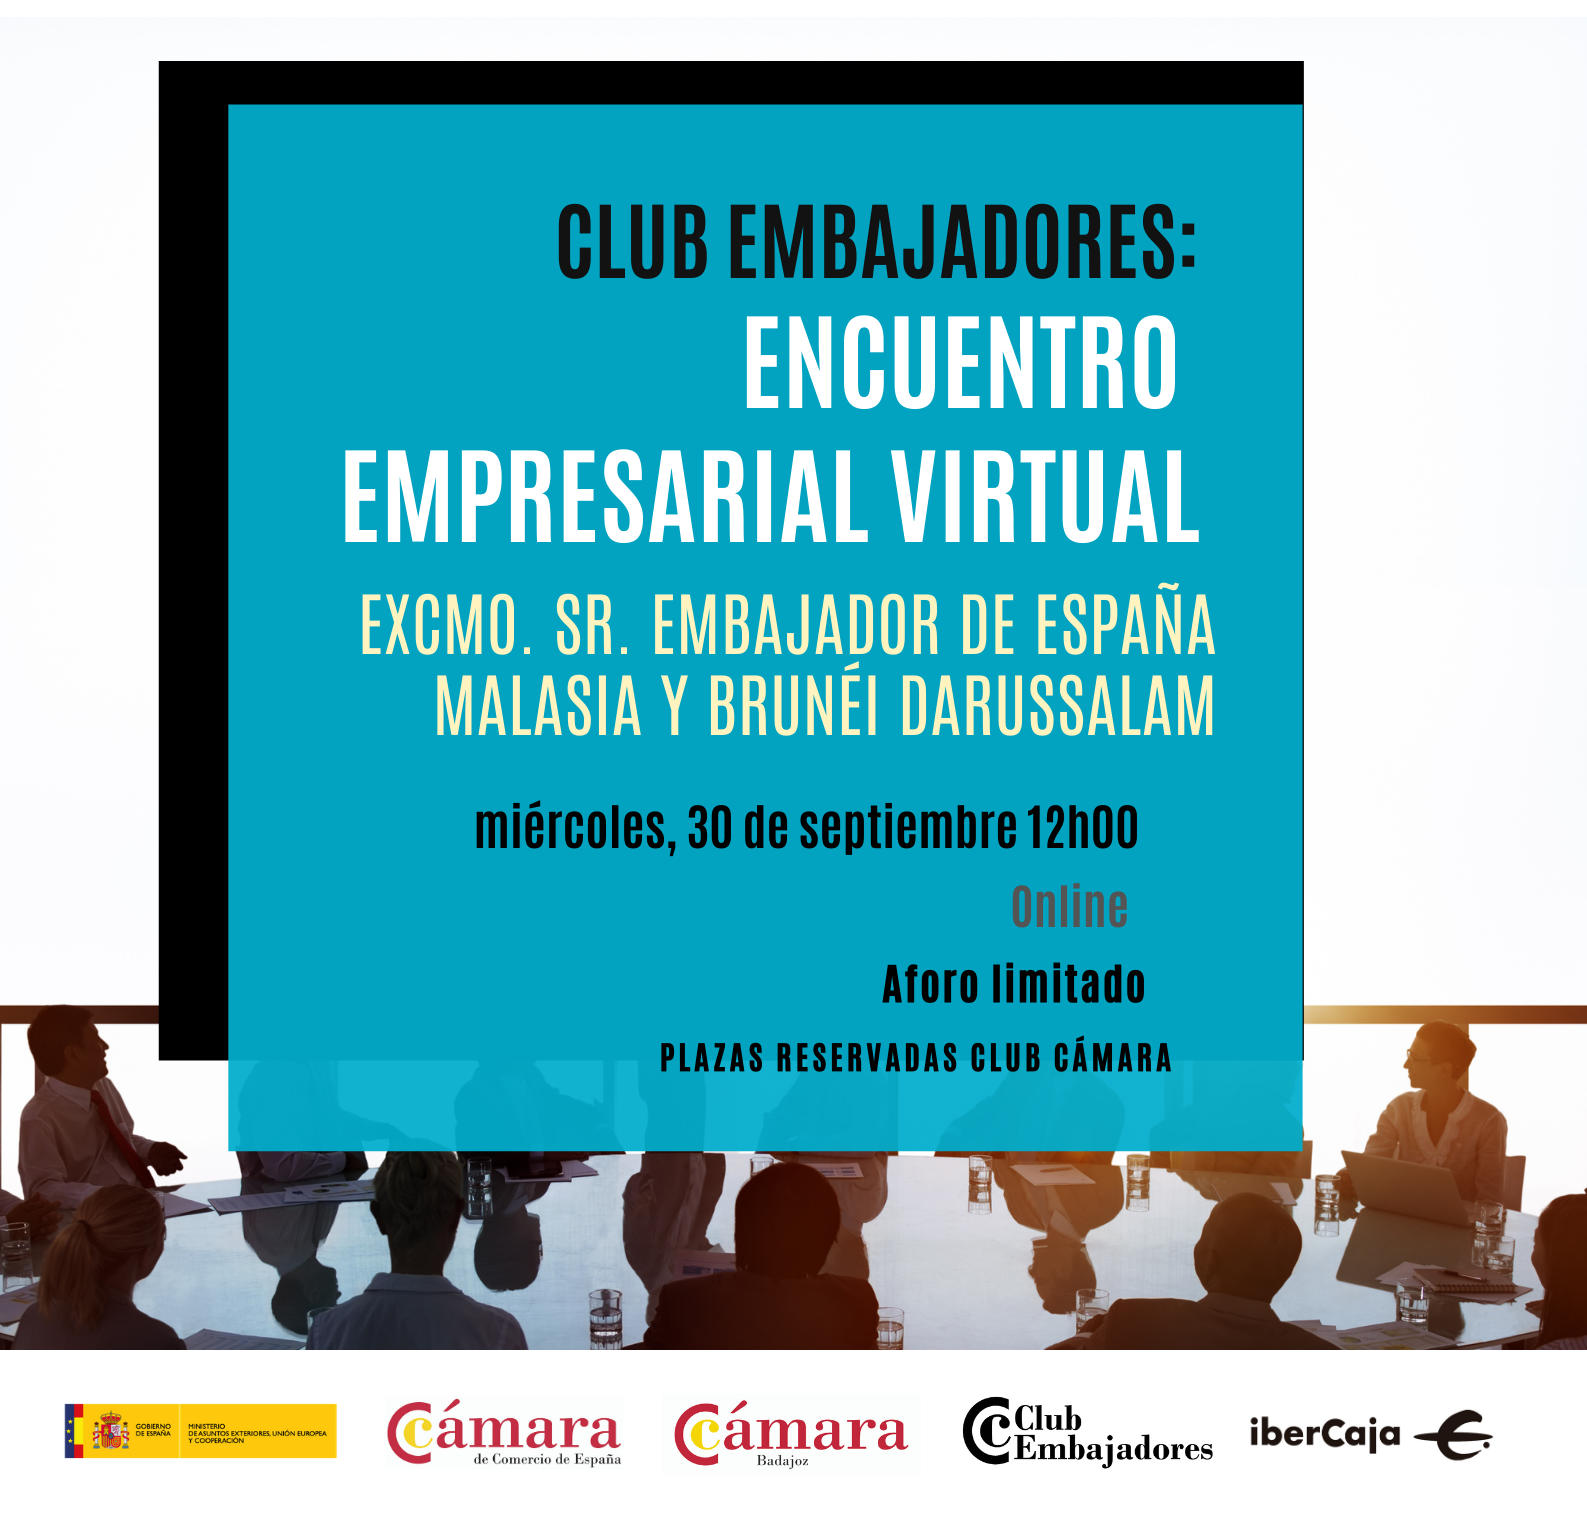 Club Embajadores: ENCUENTRO EMPRESARIAL VIRTUAL- Excmo. Sr. Embajador de España  Malasia y Brunéi Darussalam